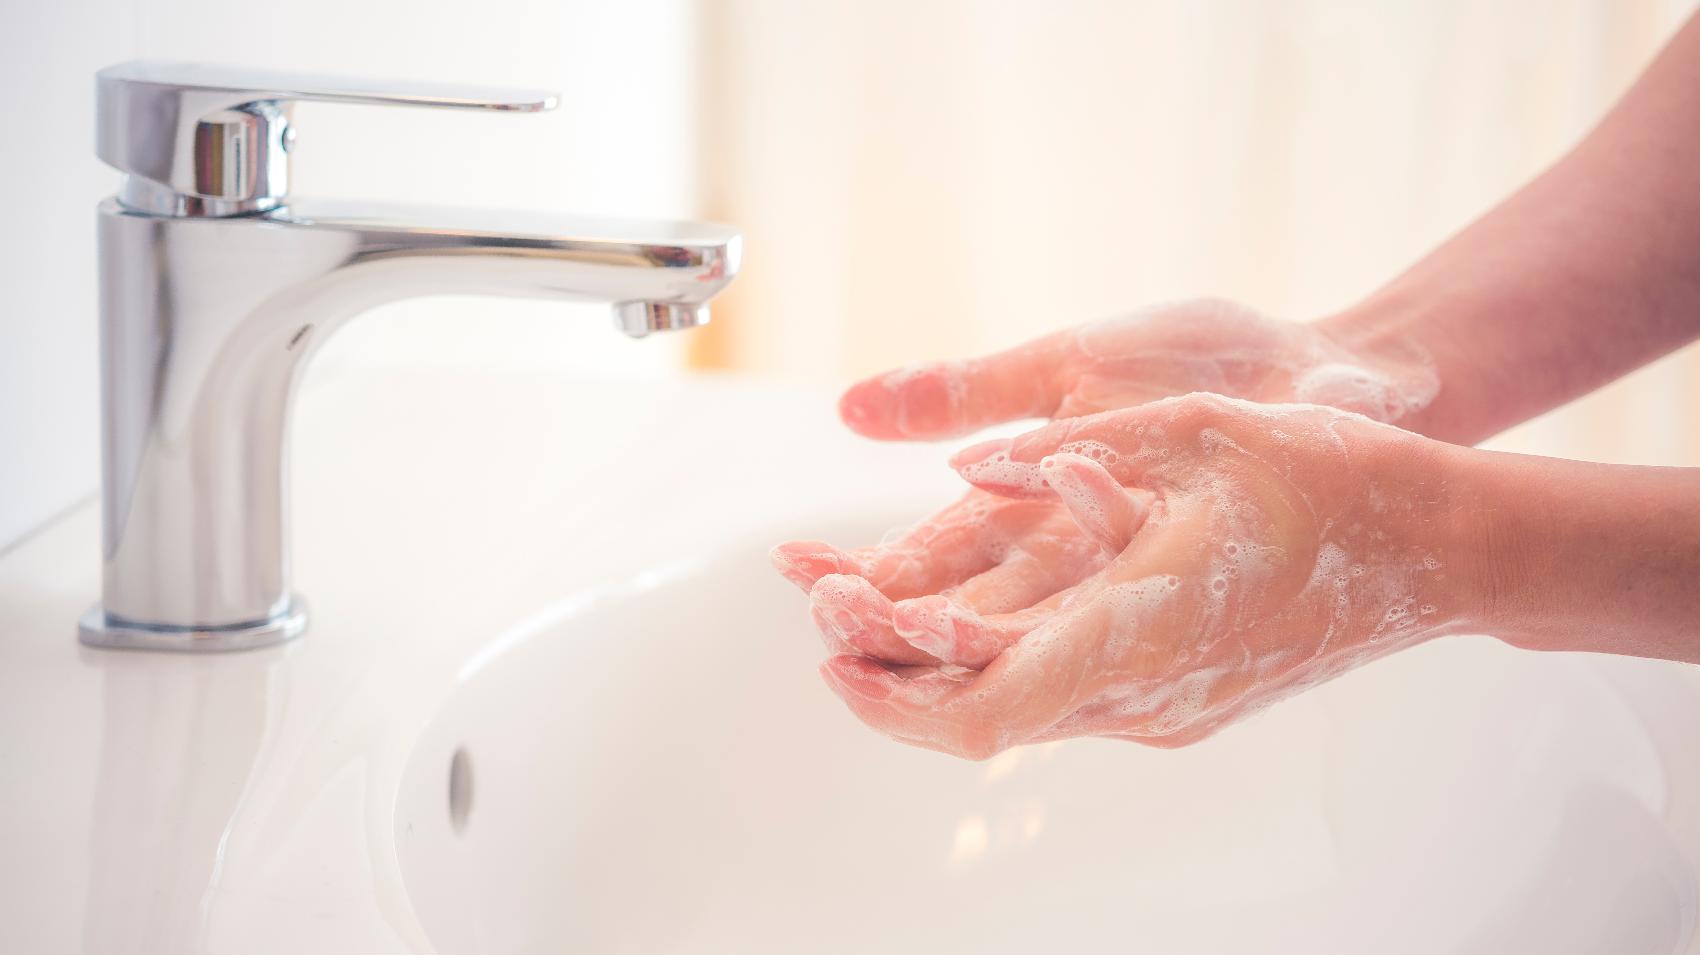 Prevenção da Toxoplasmose - Lavar mãos